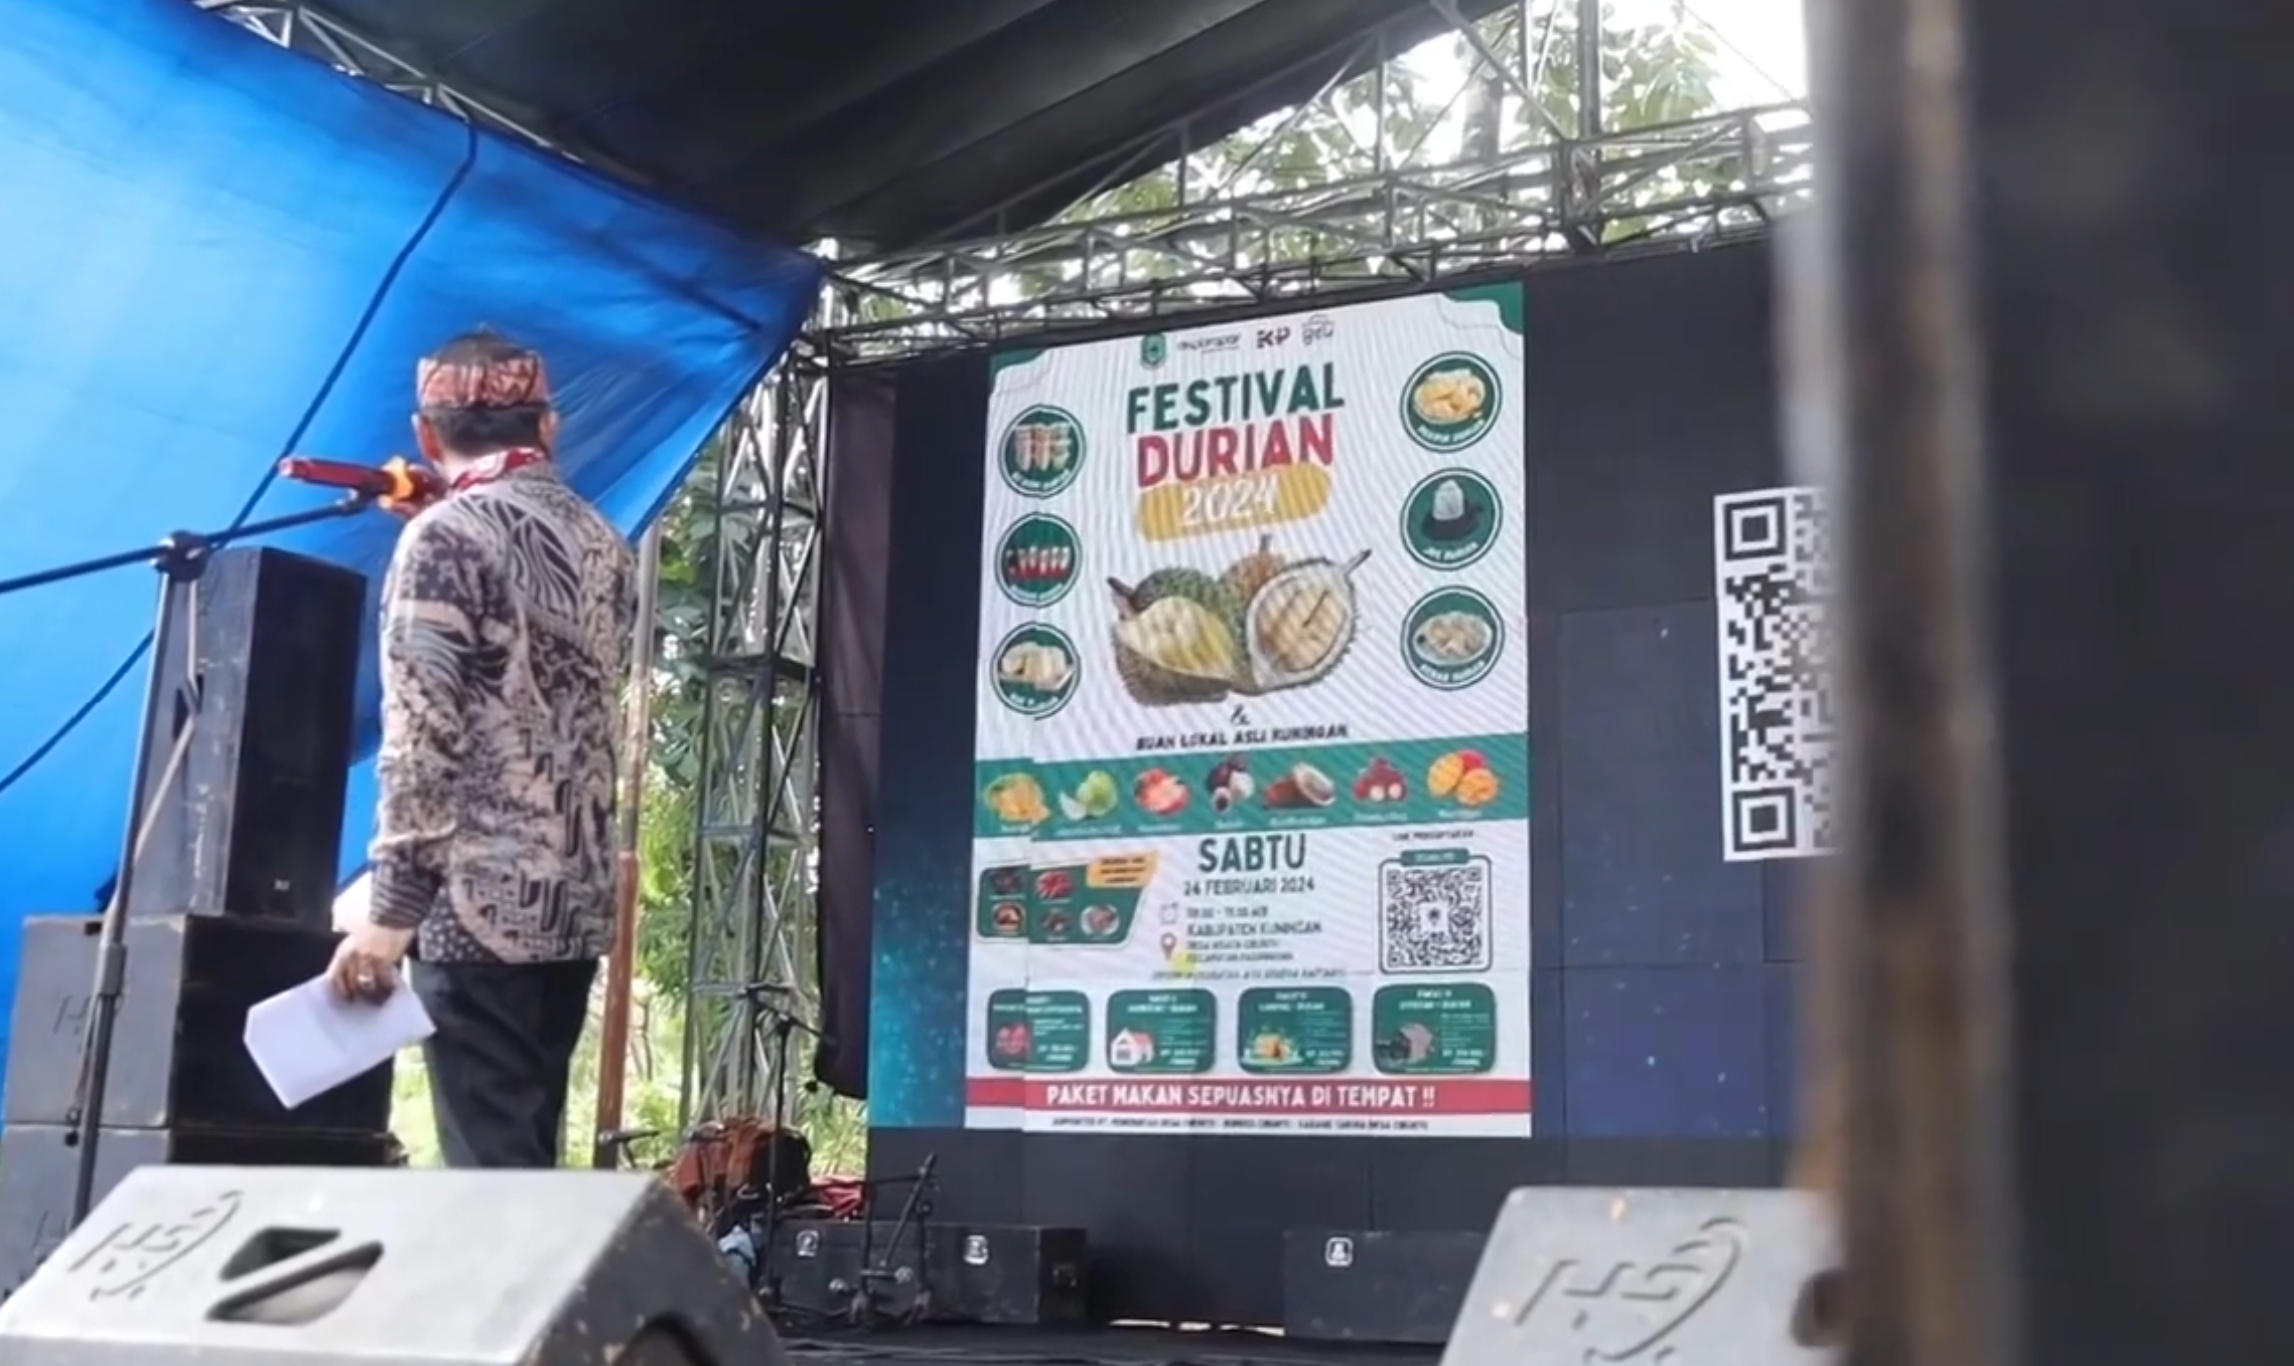 5 Agenda Wisata Kuningan yang Bisa Dikunjungi Sepanjang Tahun Ini, Terdekat Ada Festival Durian